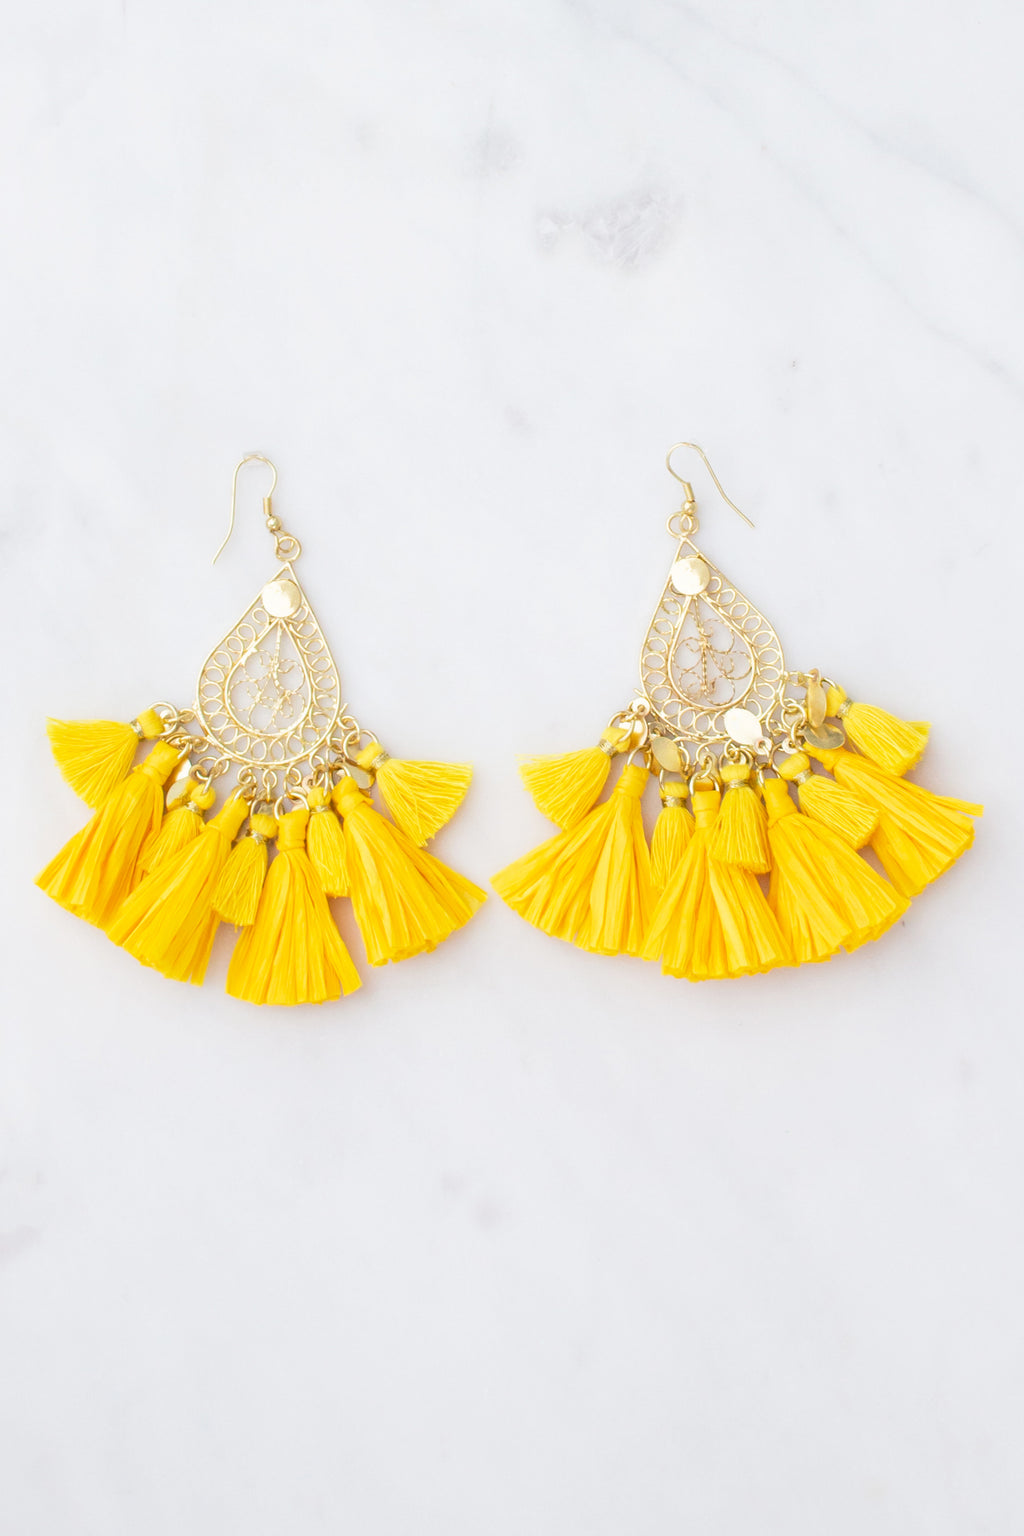 Cute yellow boutique earrings, trendy yellow boutique earrings, yellow fashion earrings, yellow boutique earrings